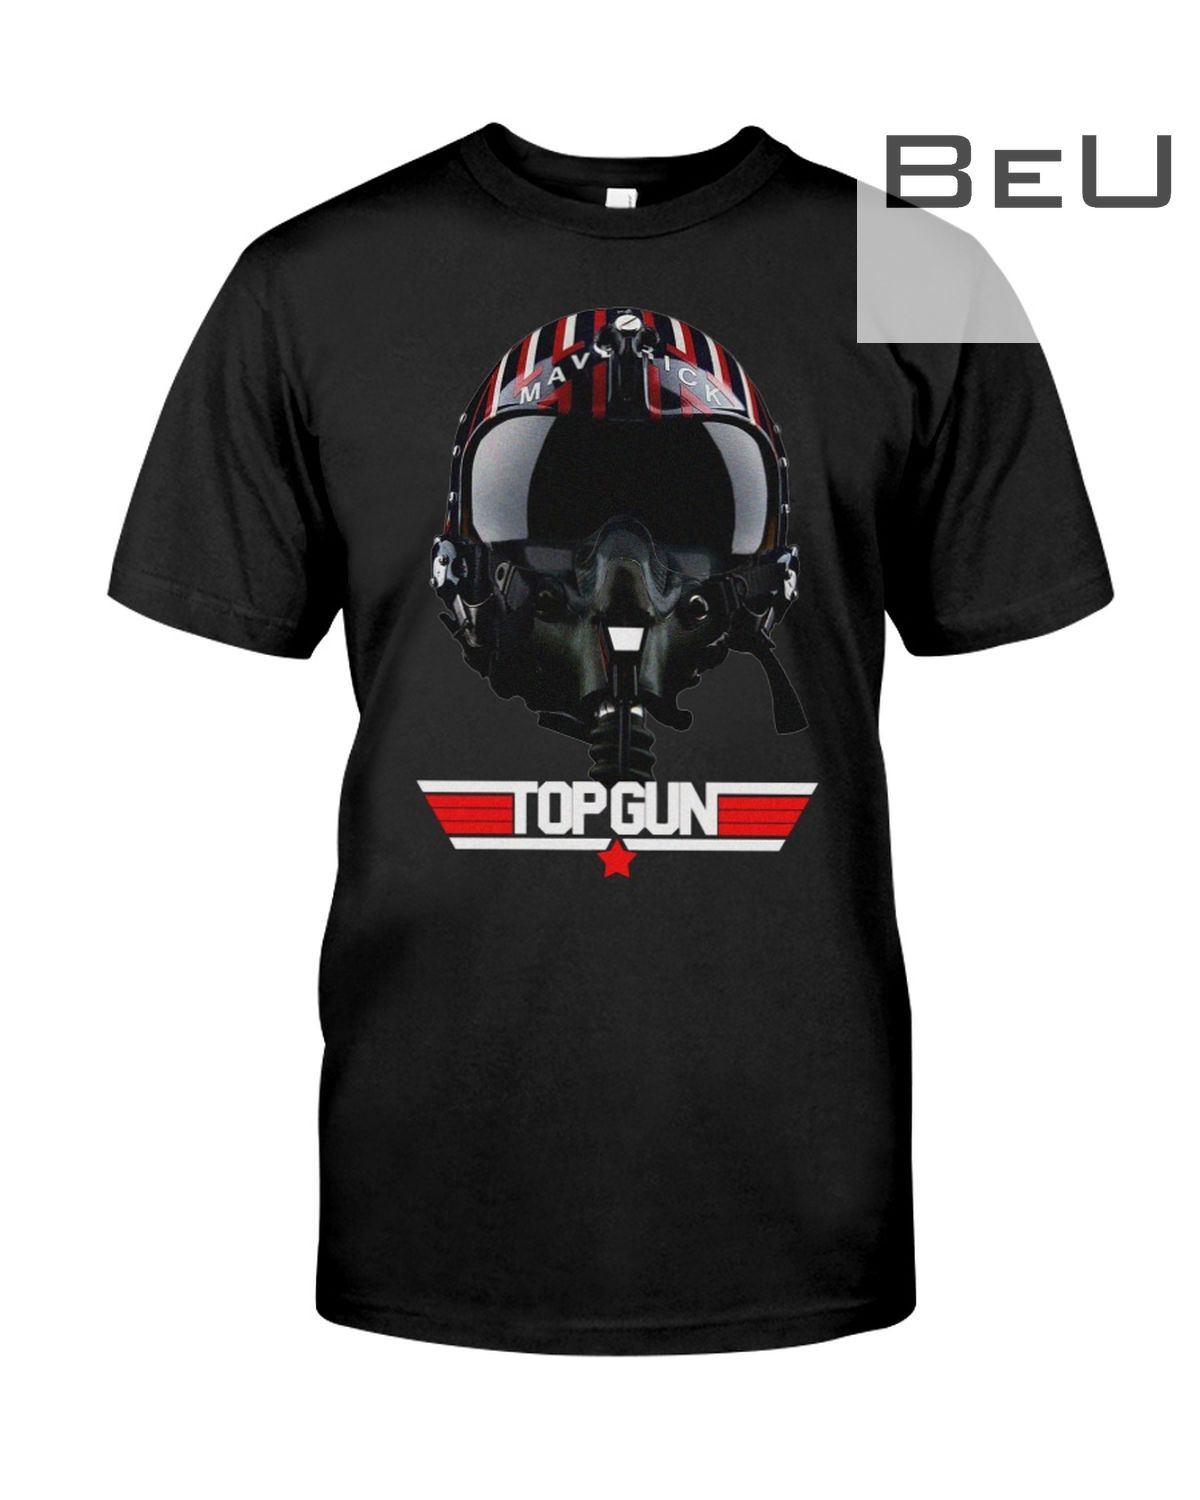 Maverick Helmet Top Gun Shirt